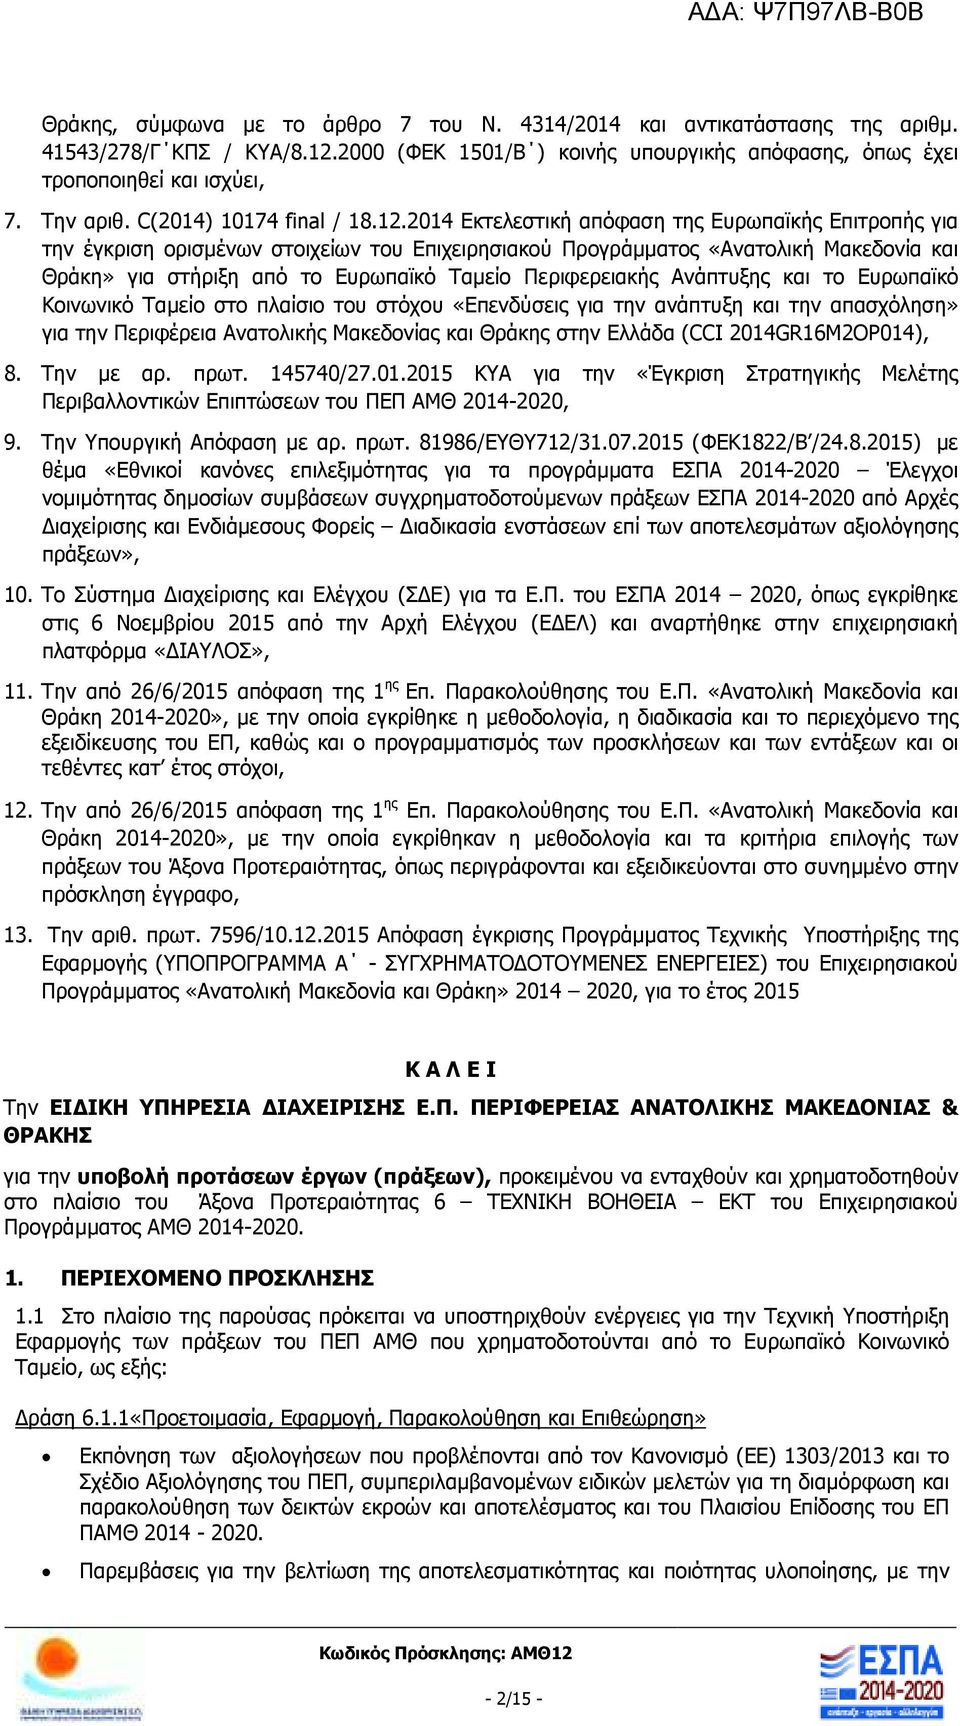 2014 Εκτελεστική απόφαση της Ευρωπαϊκής Επιτροπής για την έγκριση ορισµένων στοιχείων του Επιχειρησιακού Προγράµµατος «Ανατολική Μακεδονία και Θράκη» για στήριξη από το Ευρωπαϊκό Ταµείο Περιφερειακής